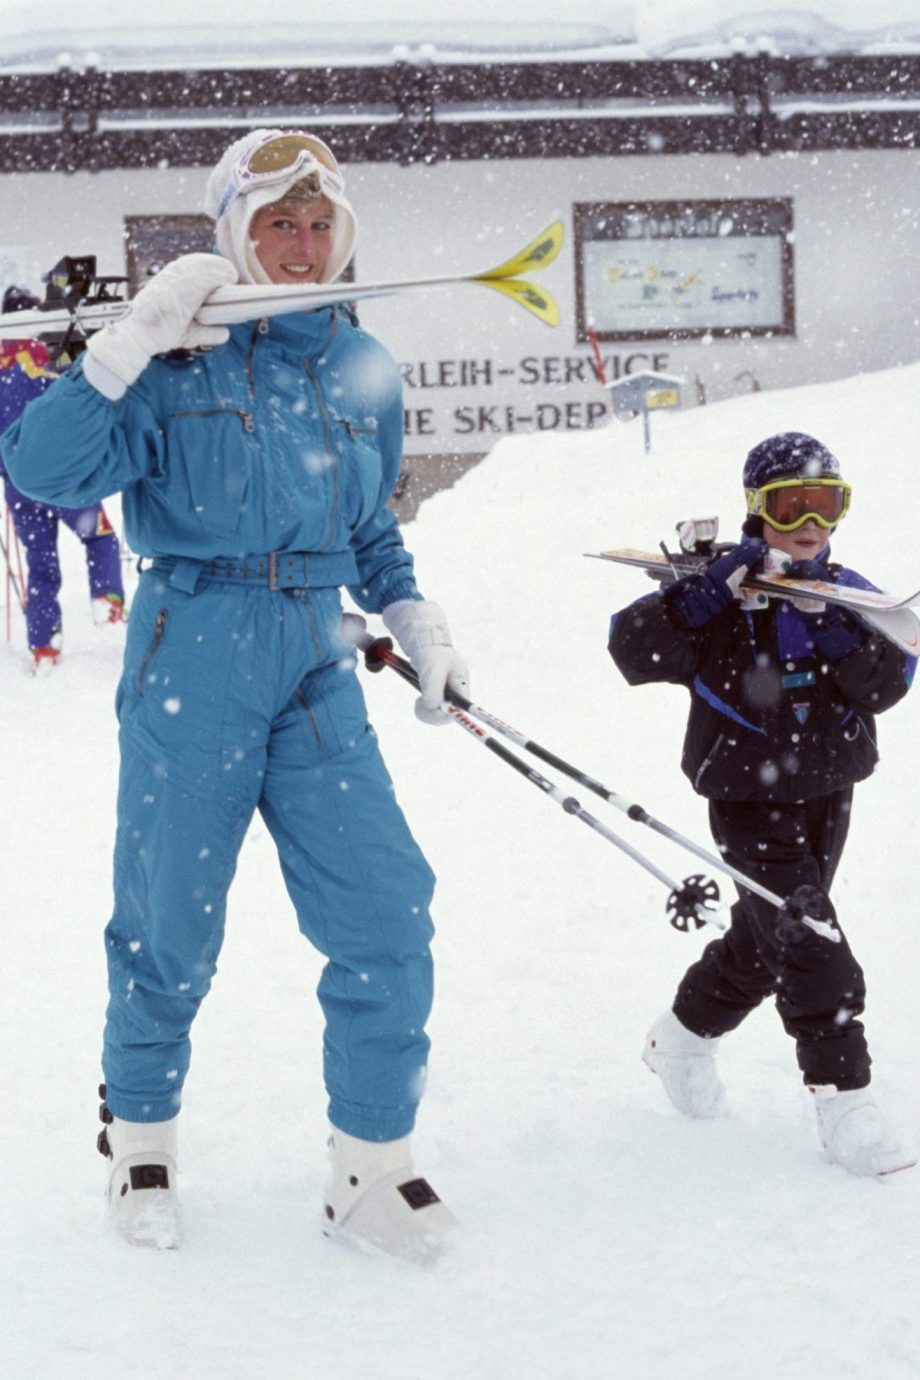 van-balaclavas-tot-snowboots-met-deze-18-items-ga-je-ski-chic-op-wintersport-237371